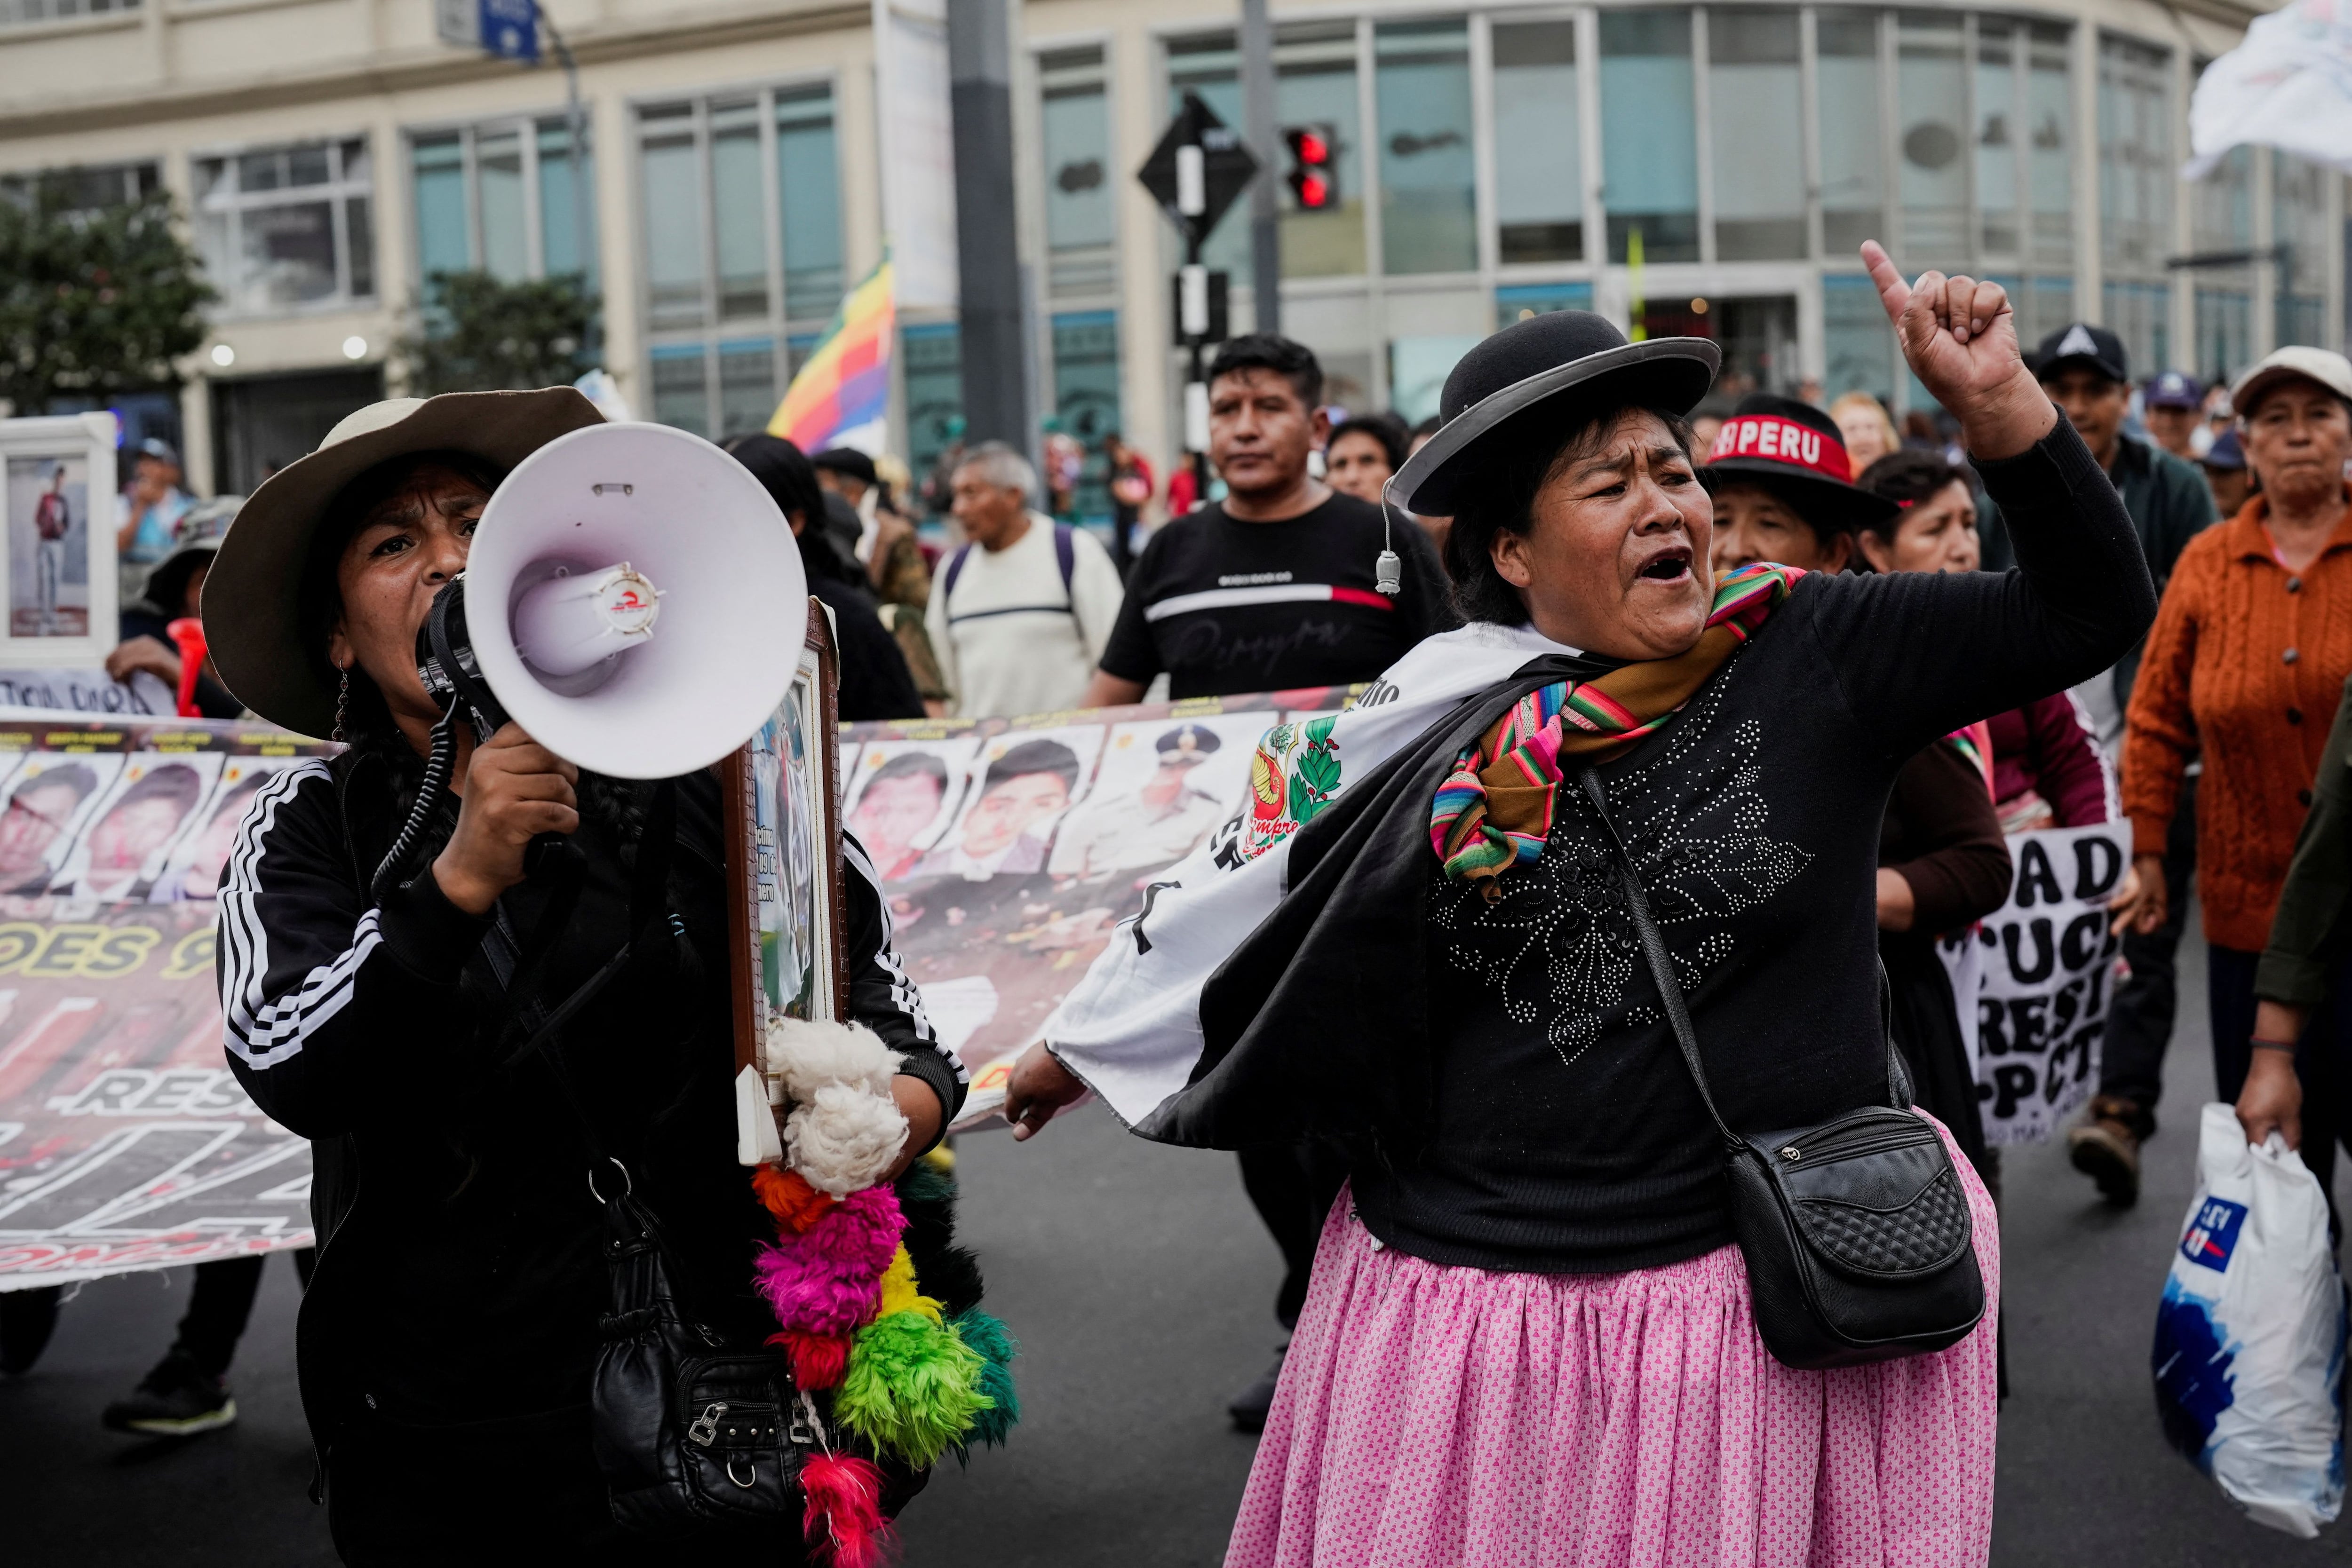 Los conflictos sociales más recientes que han sucedido en el Perú se encuentran las protestas contra Boluarte   - crédito Reuters /Angela Ponce